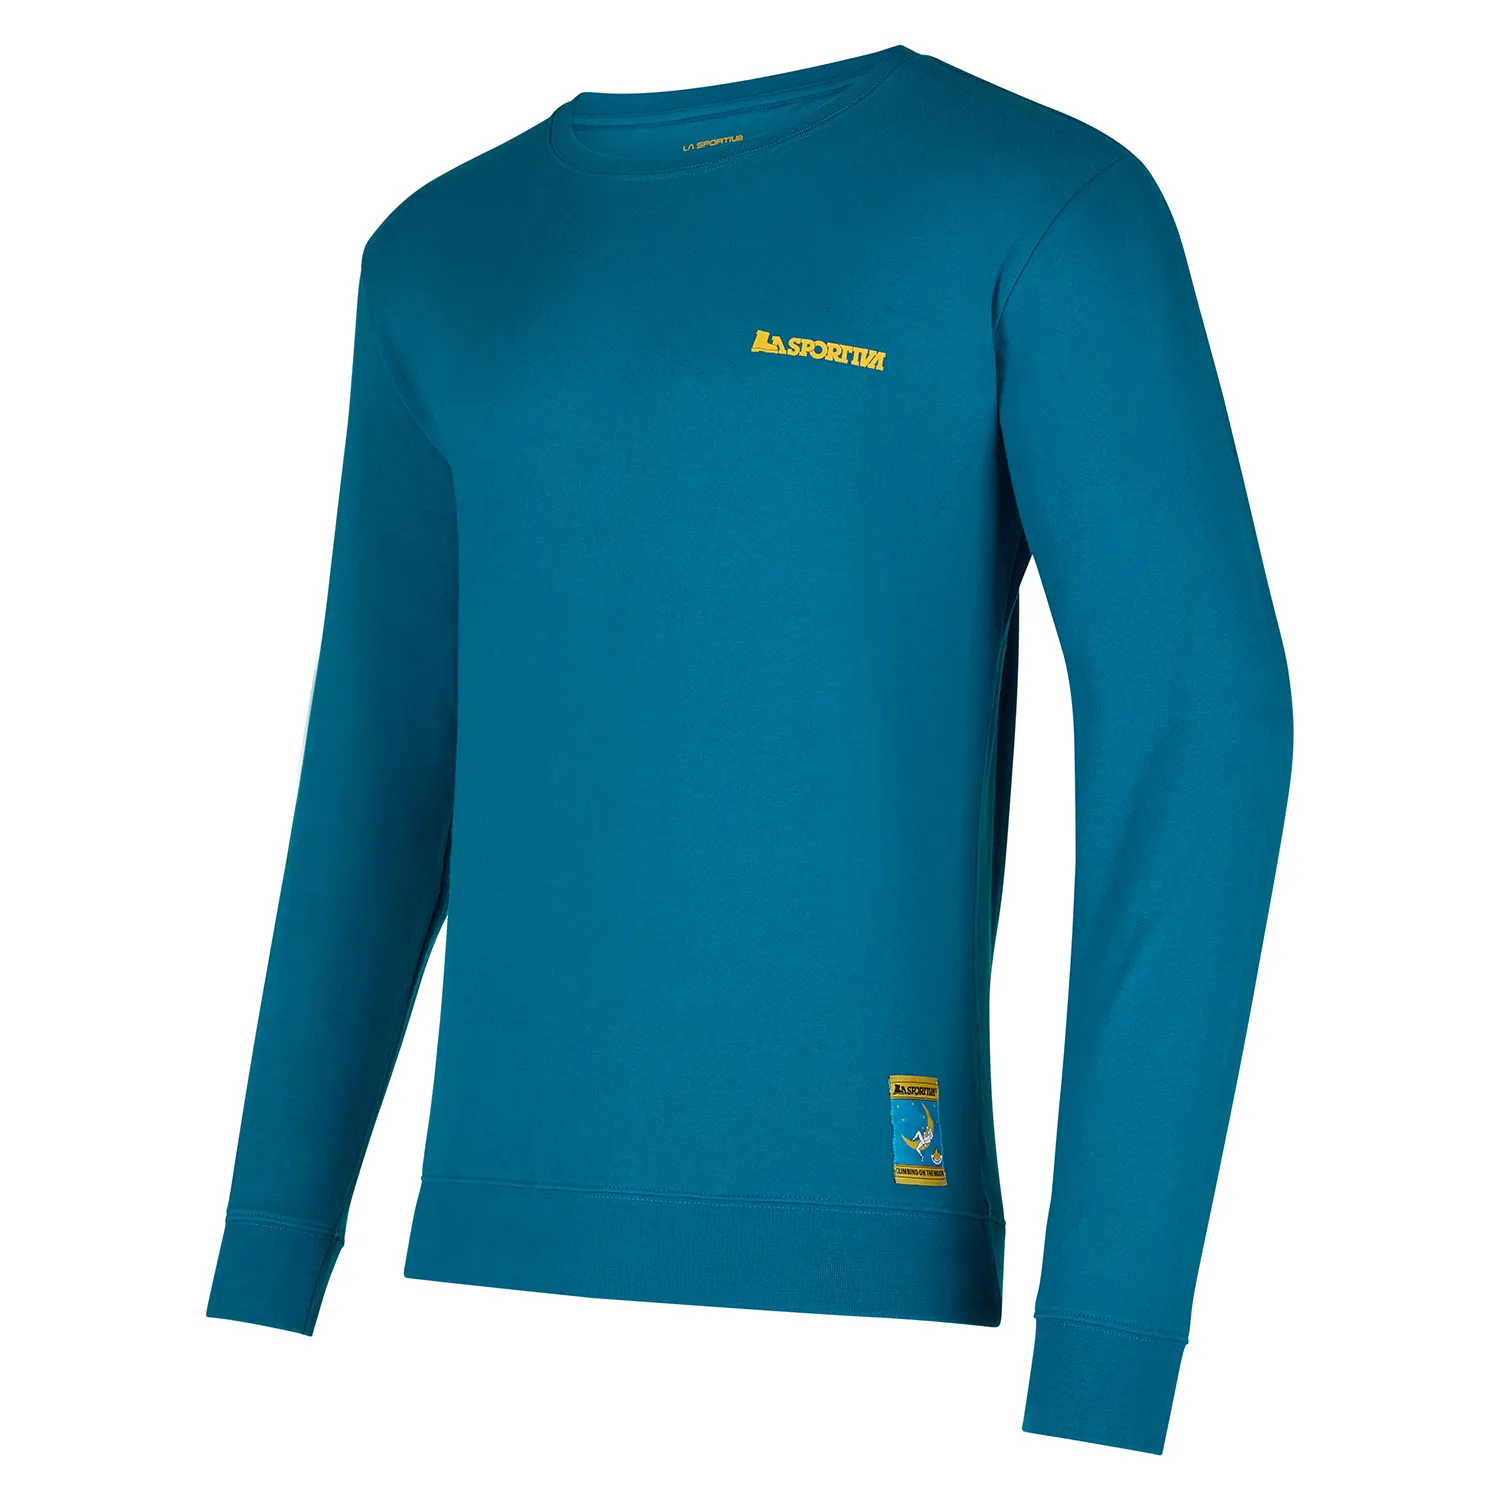 La Sportiva North America - Shop Men's Sweatshirts & Fleece Tops